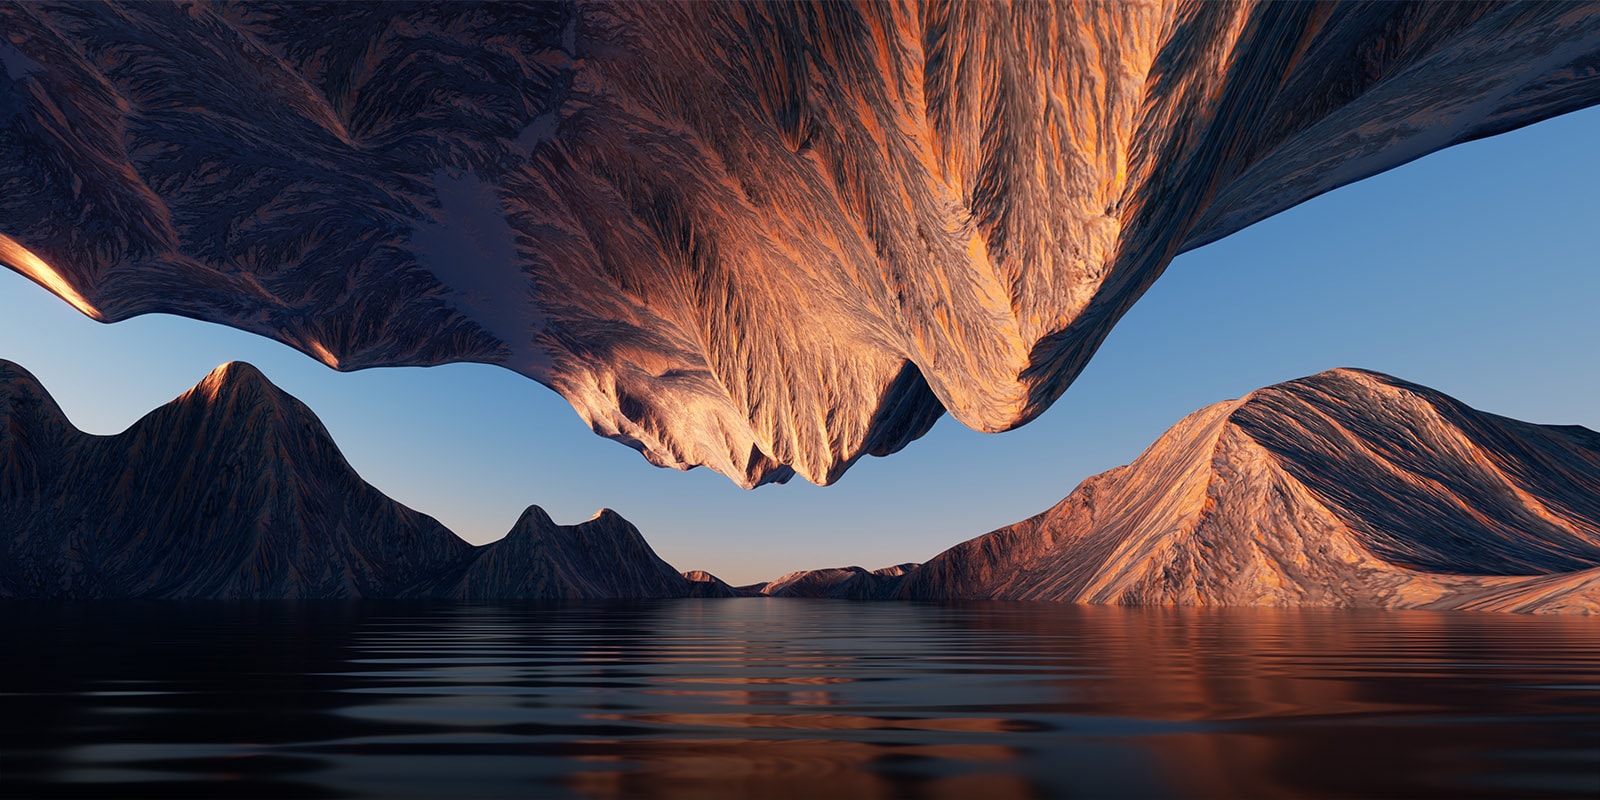 Het natuurbeeld met bergen tegenover elkaar van boven en onder toont het contrast en de details.